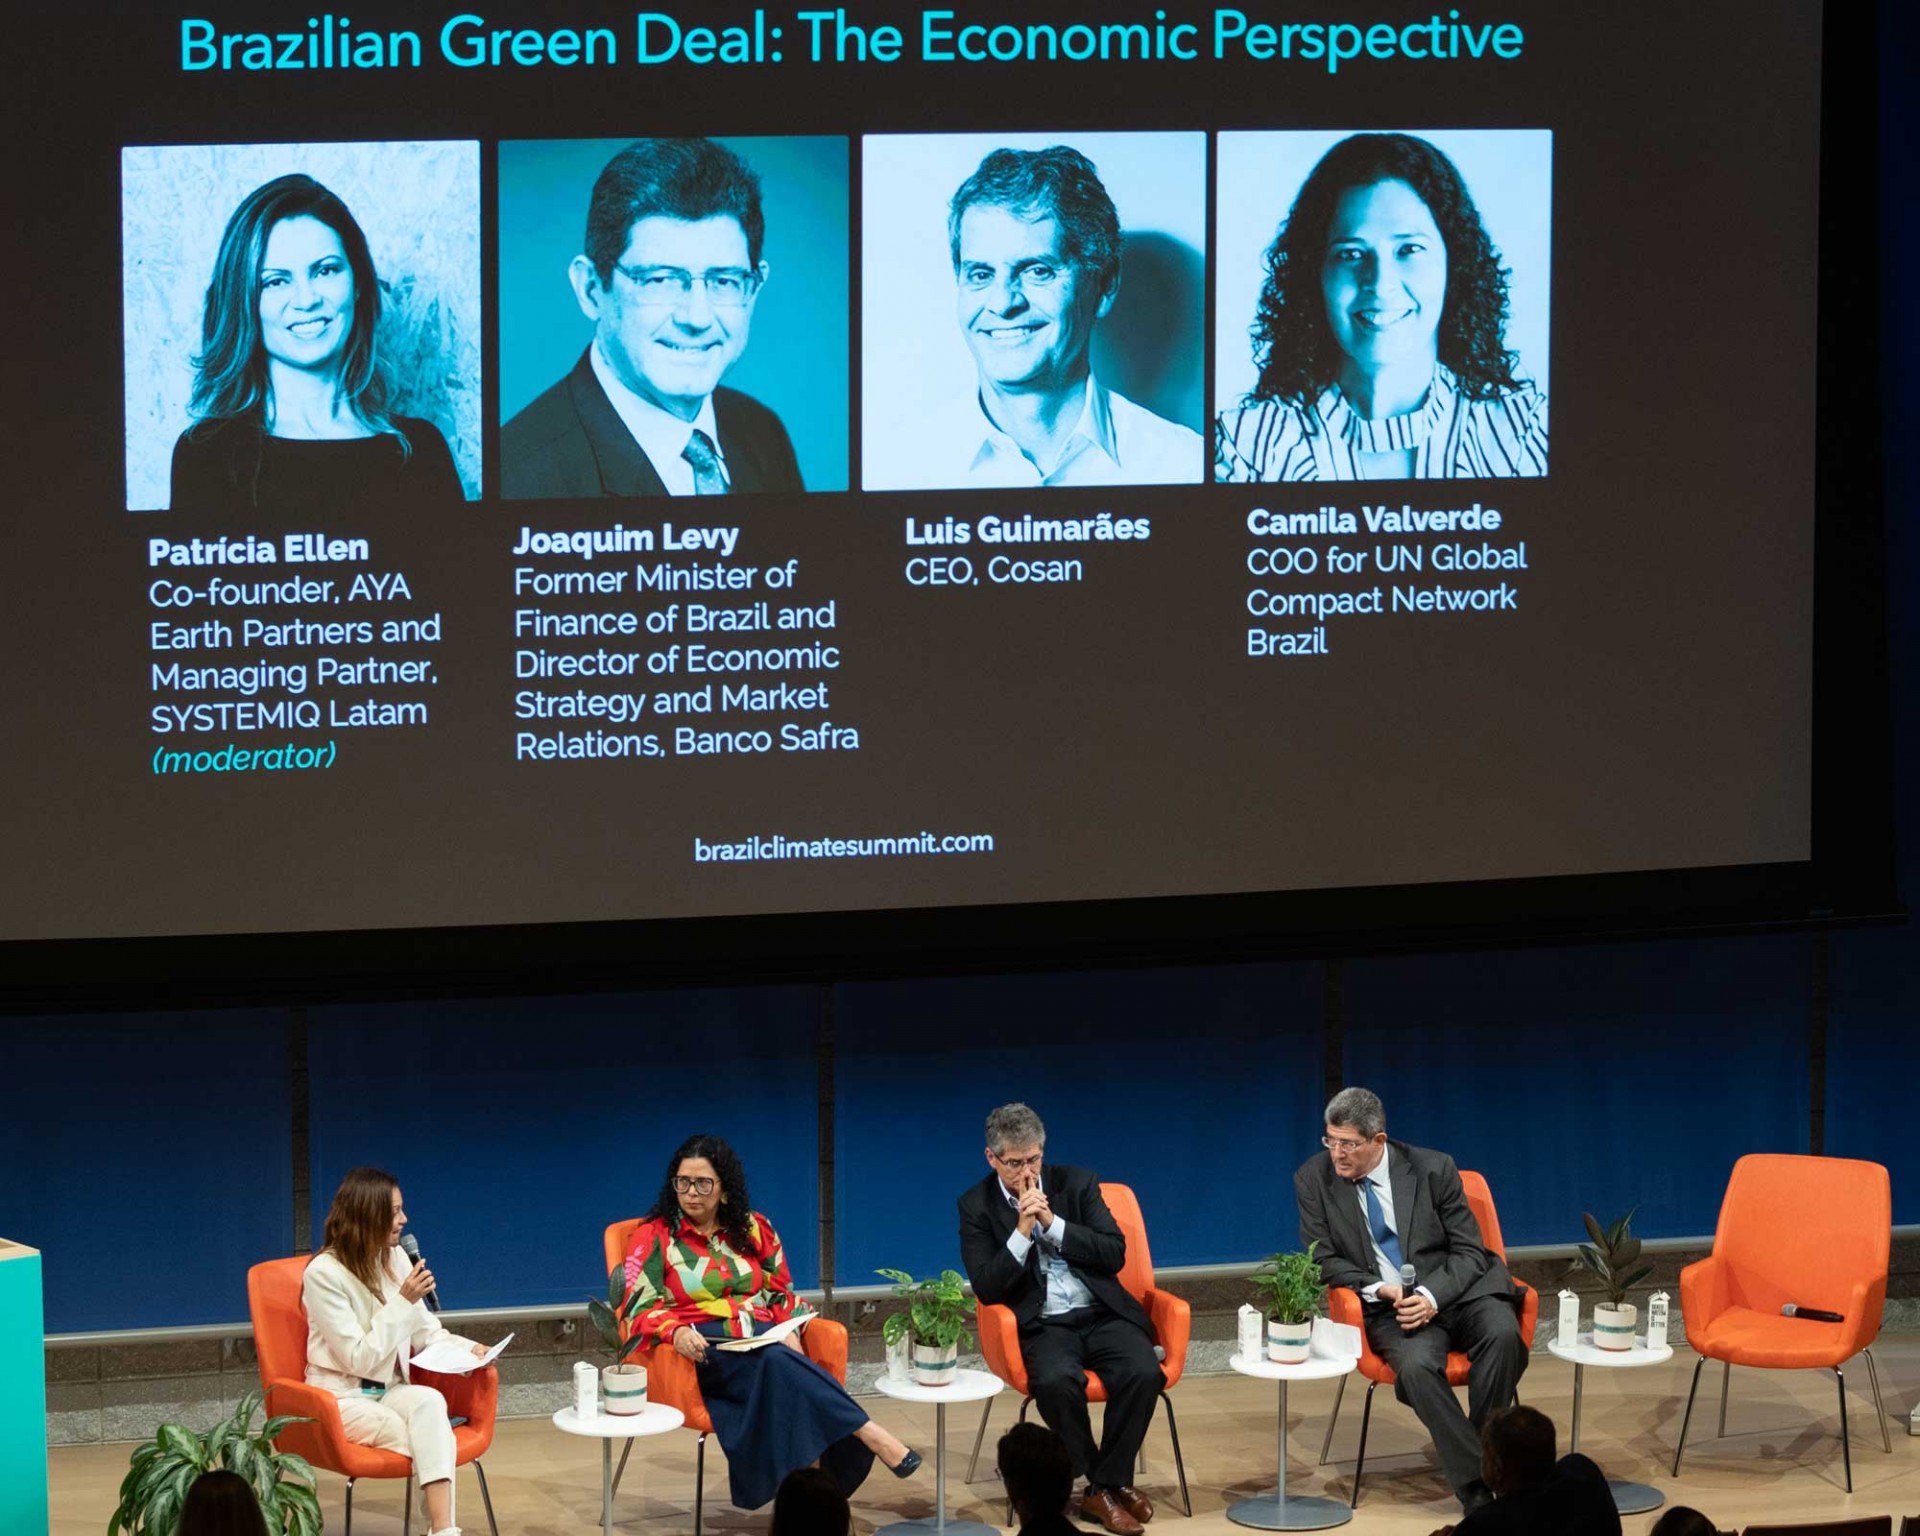 Brazil Climate Summit participants